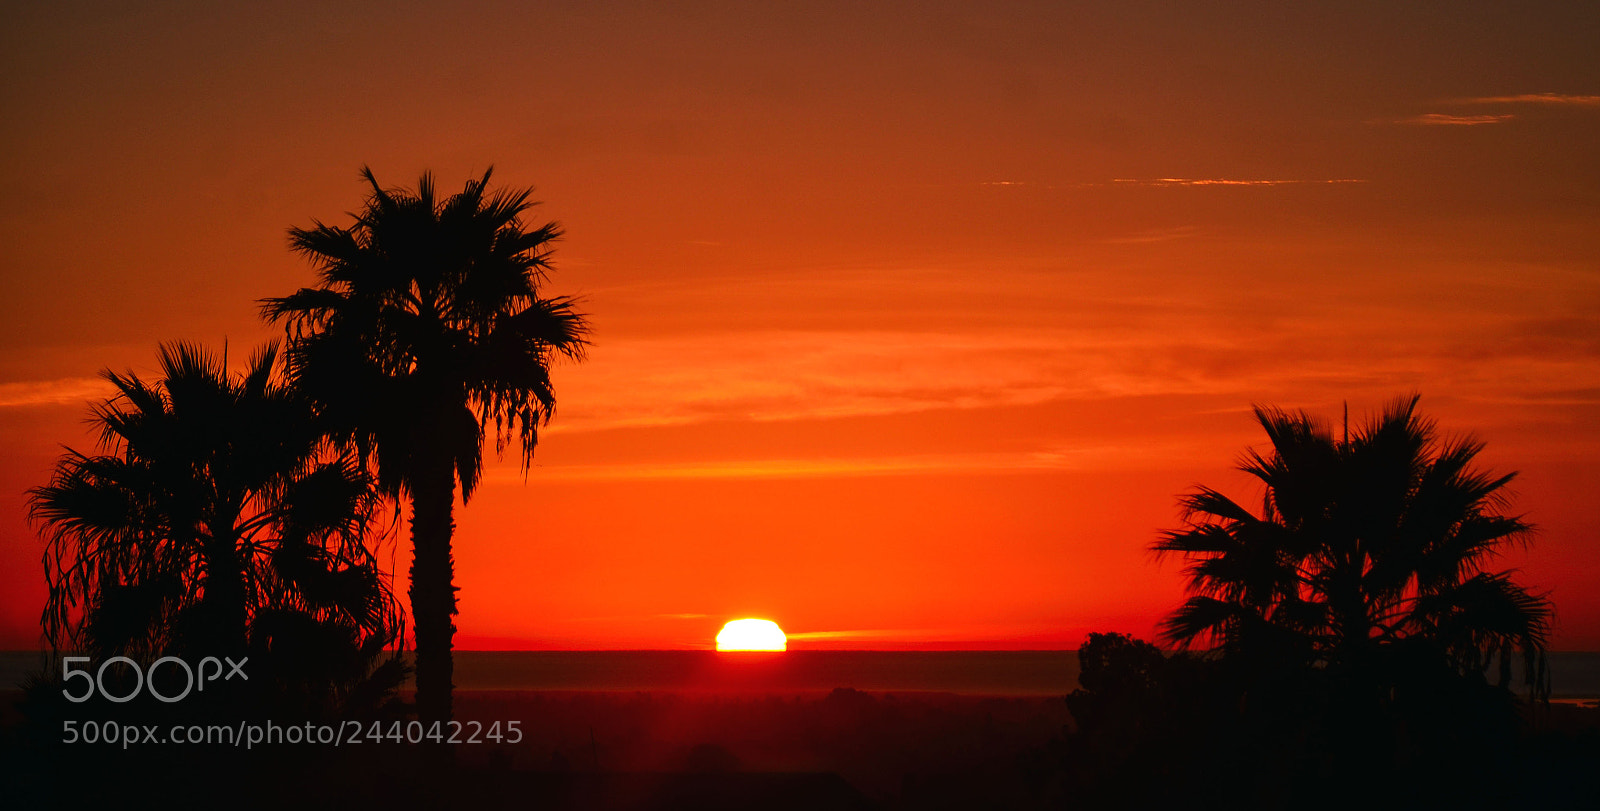 Nikon D7000 sample photo. California sunset photography